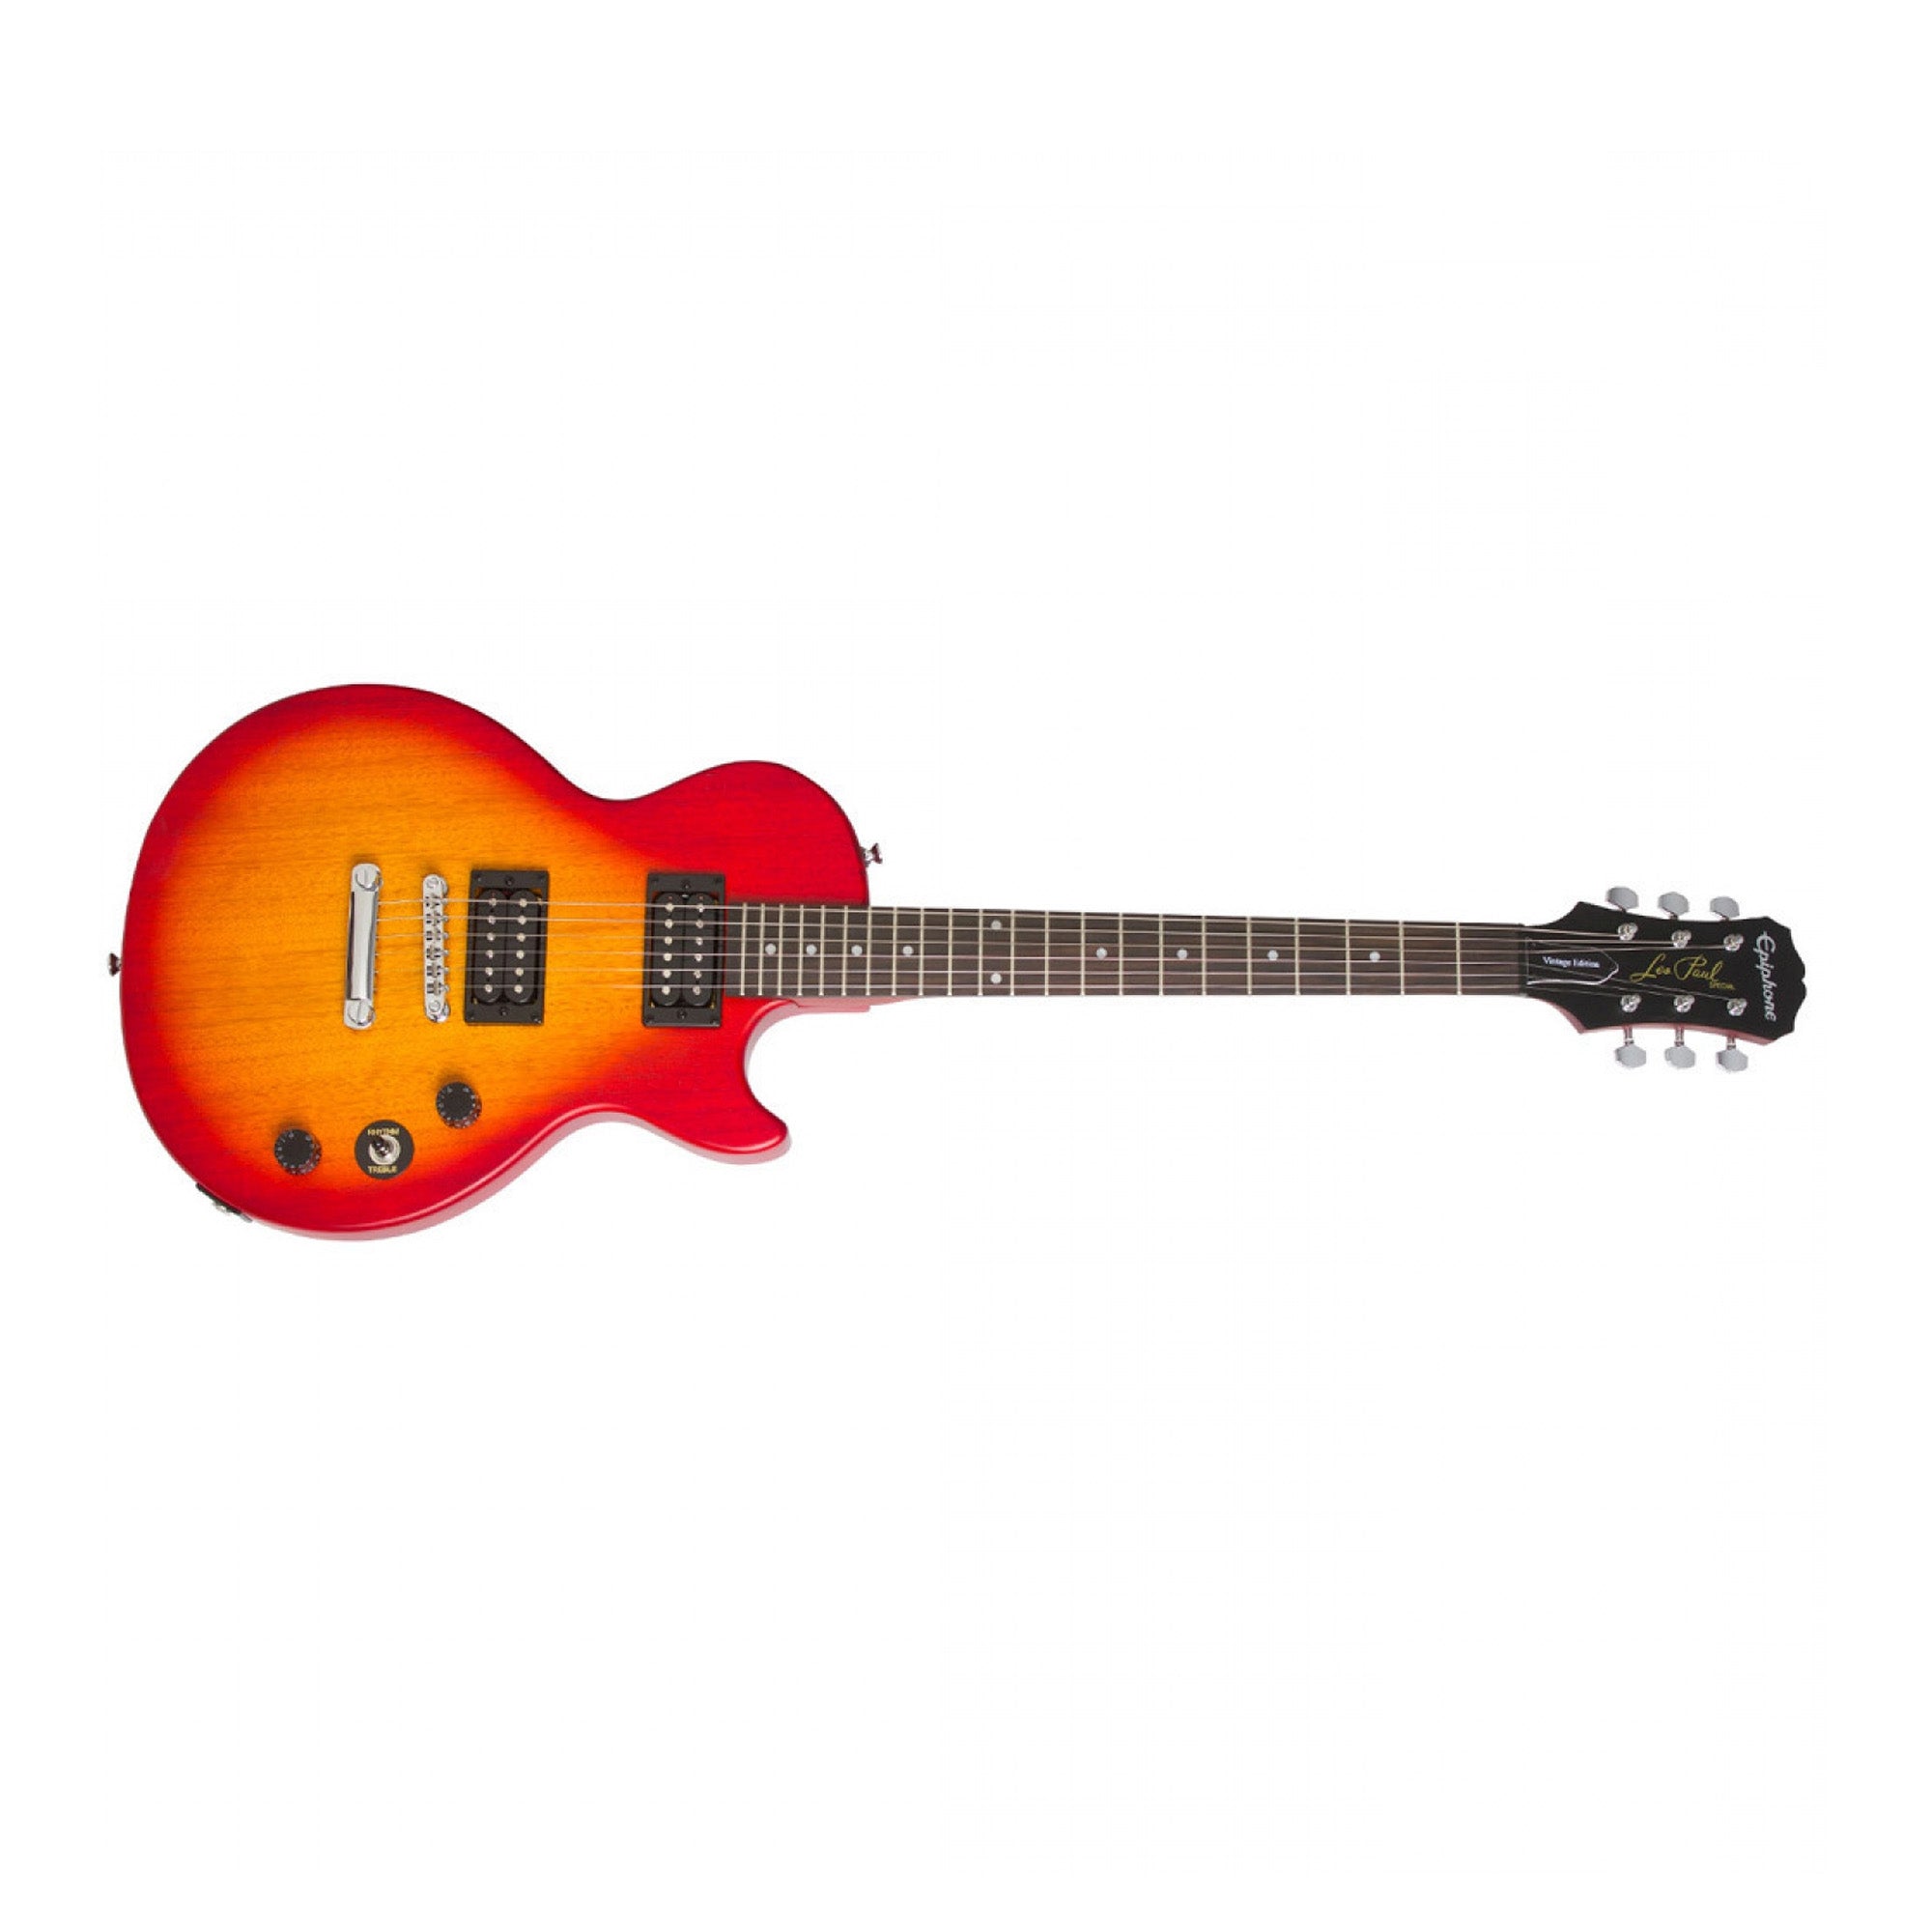 Epiphone ENSVHSVCH1-GC Les Paul Special VE Cherry Sunburst Electric Guitar with Guitar Case